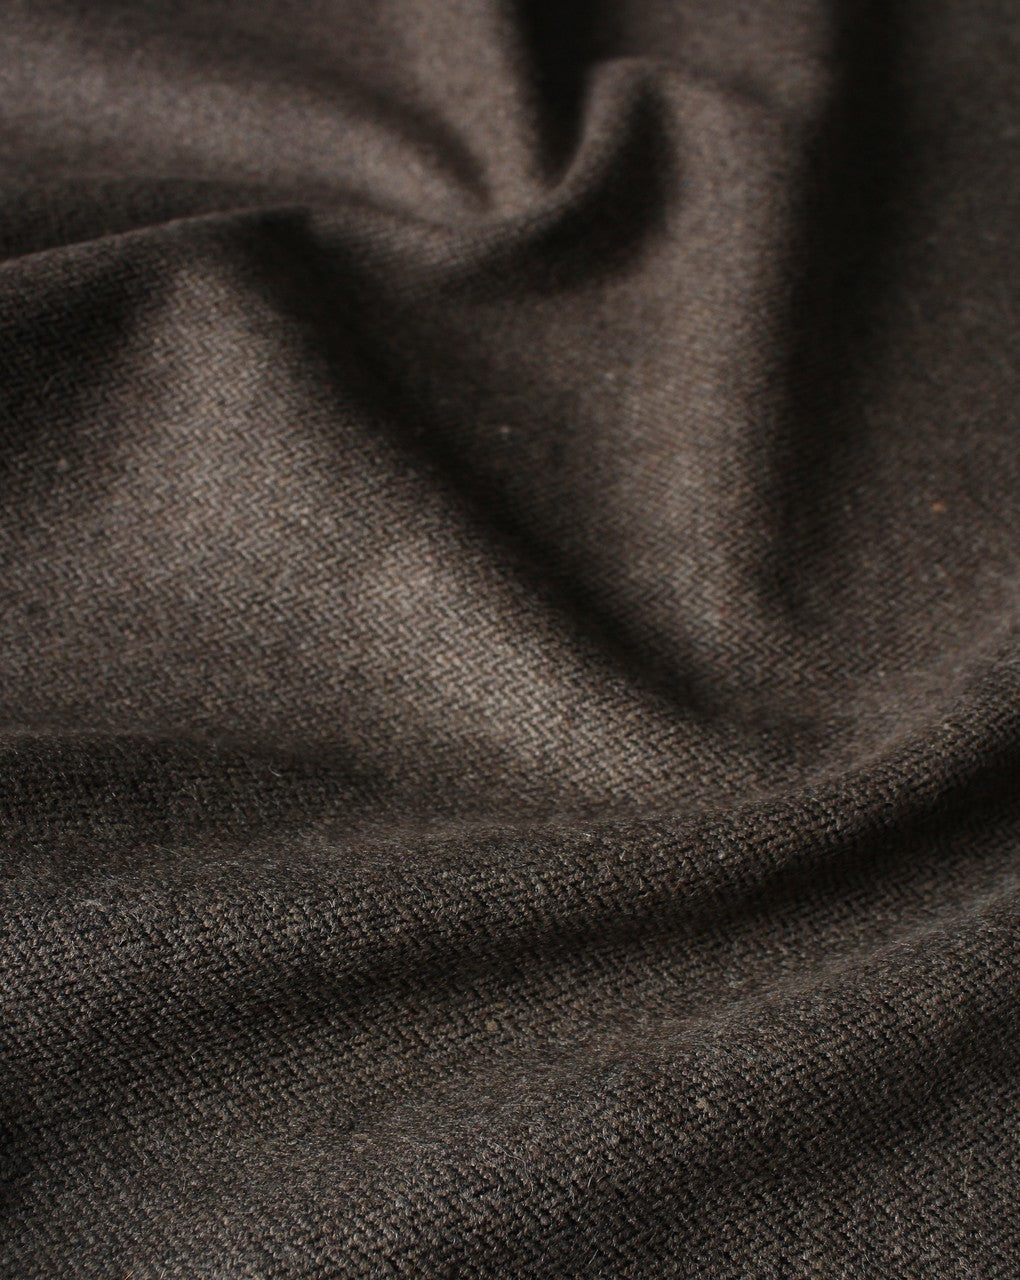 Light Brown Woolen Tweed Fabric